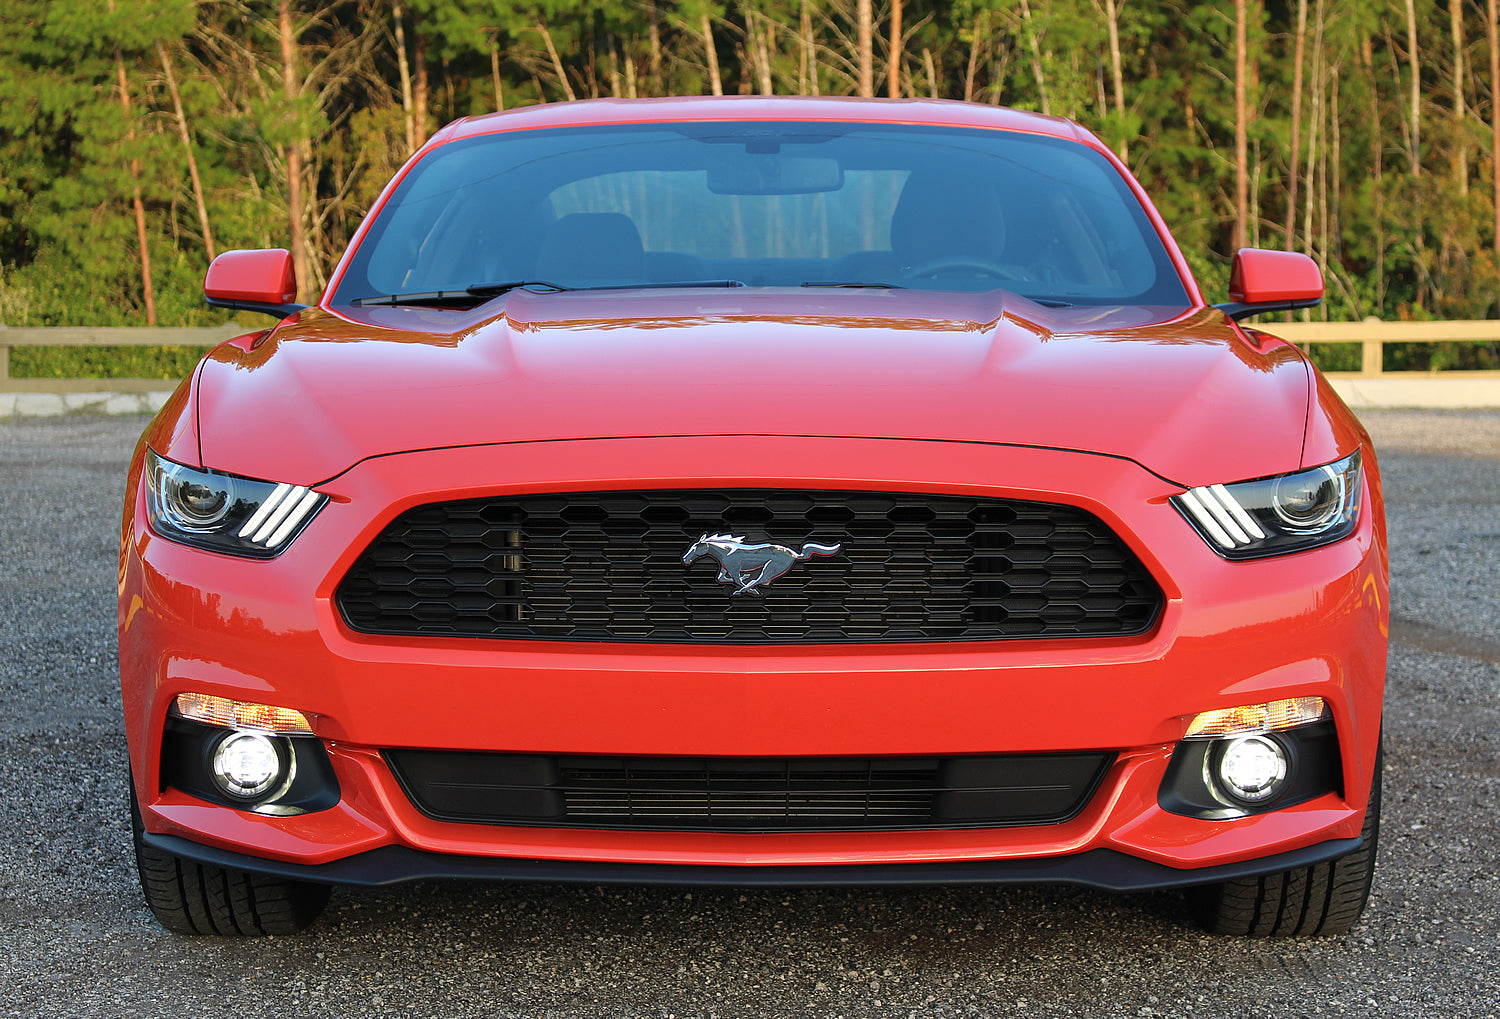 Mustang OEM Style Fog Light Kit - Fits V6 (2015-2017)